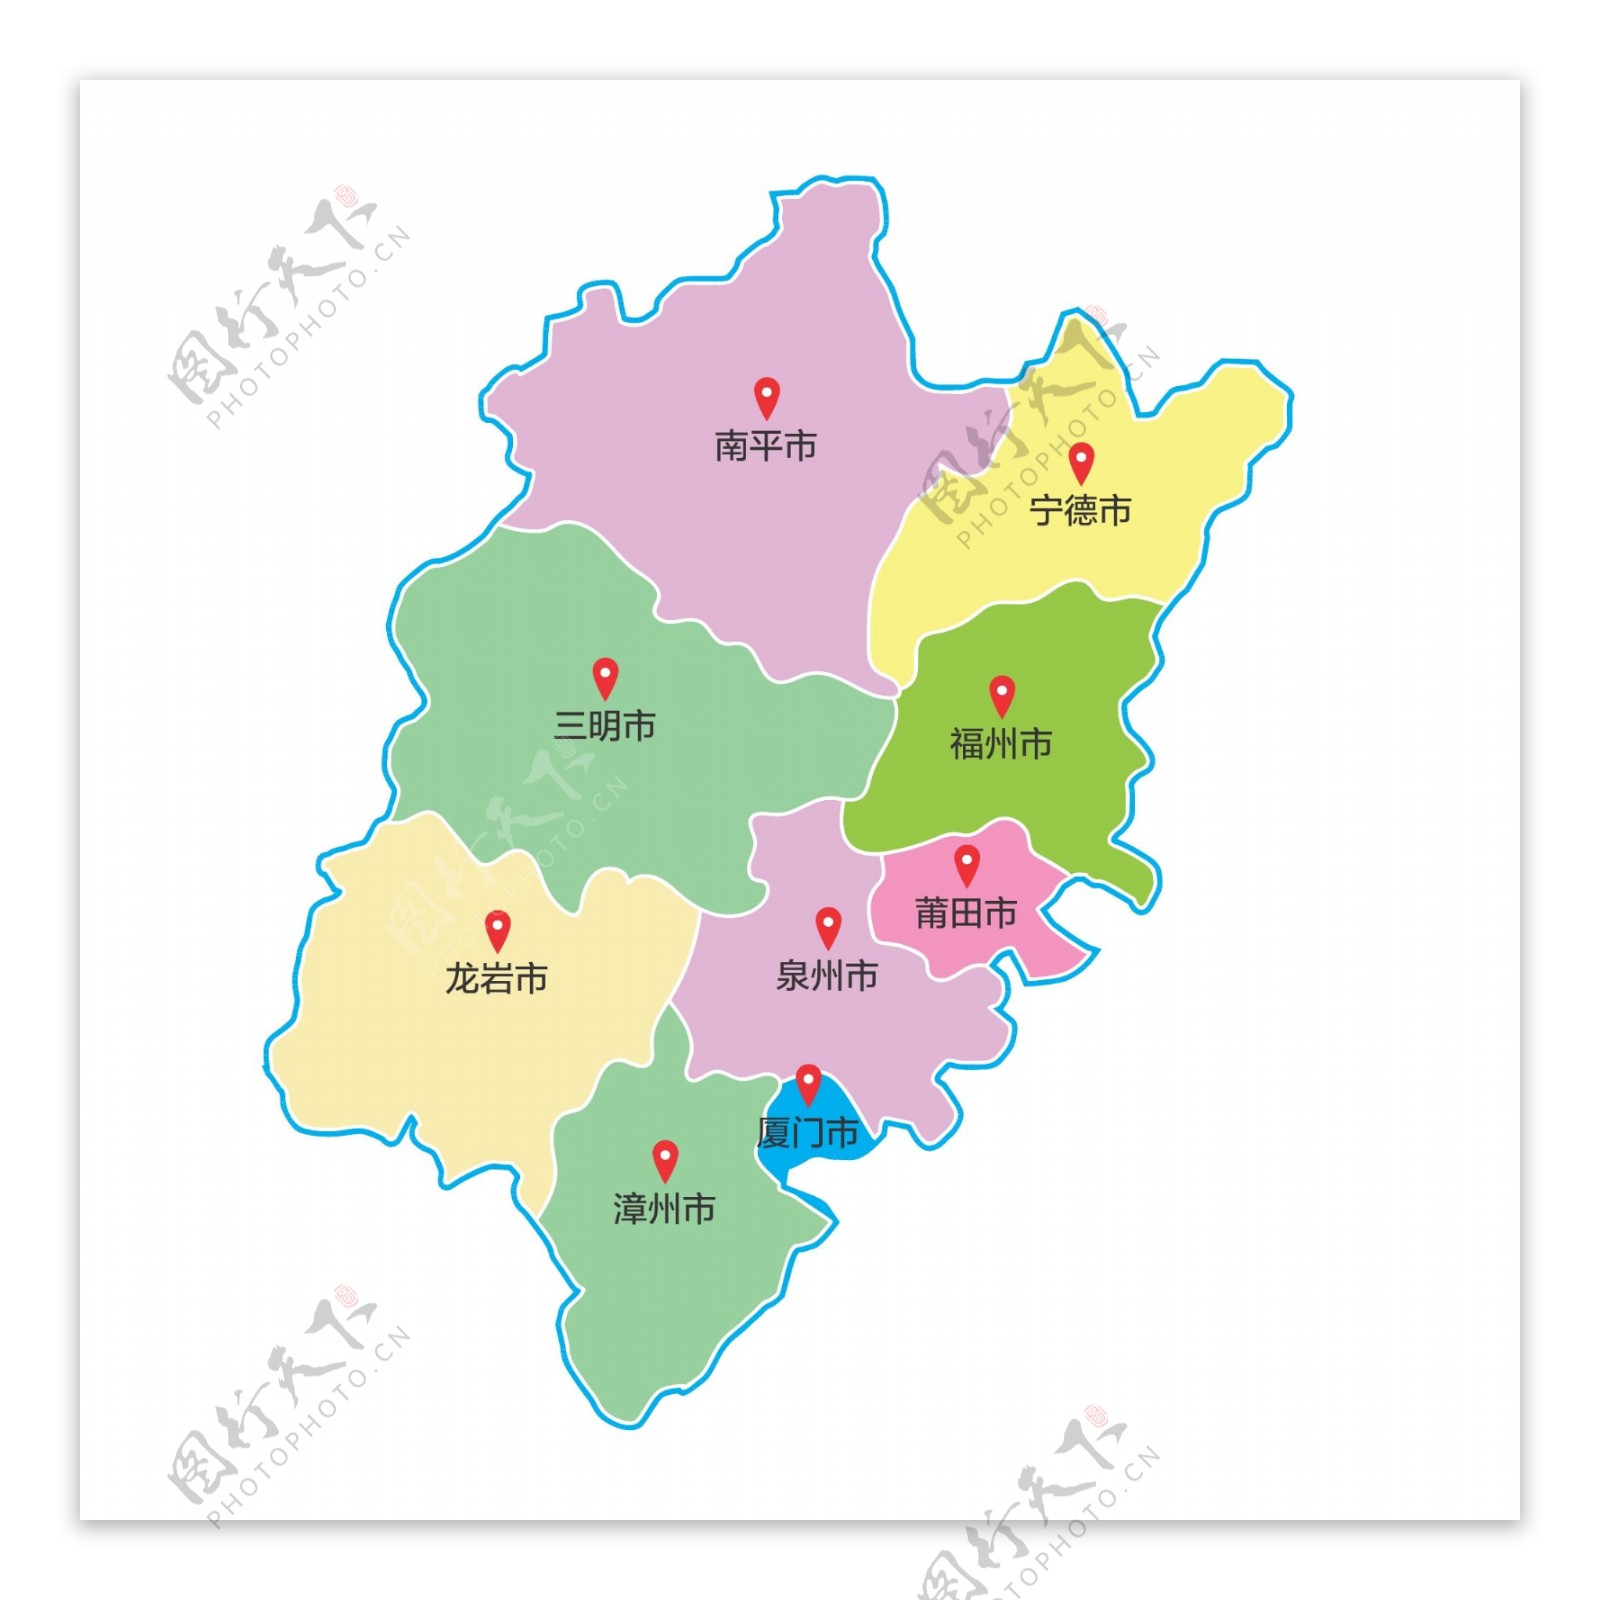 福建省区域地图矢量素材